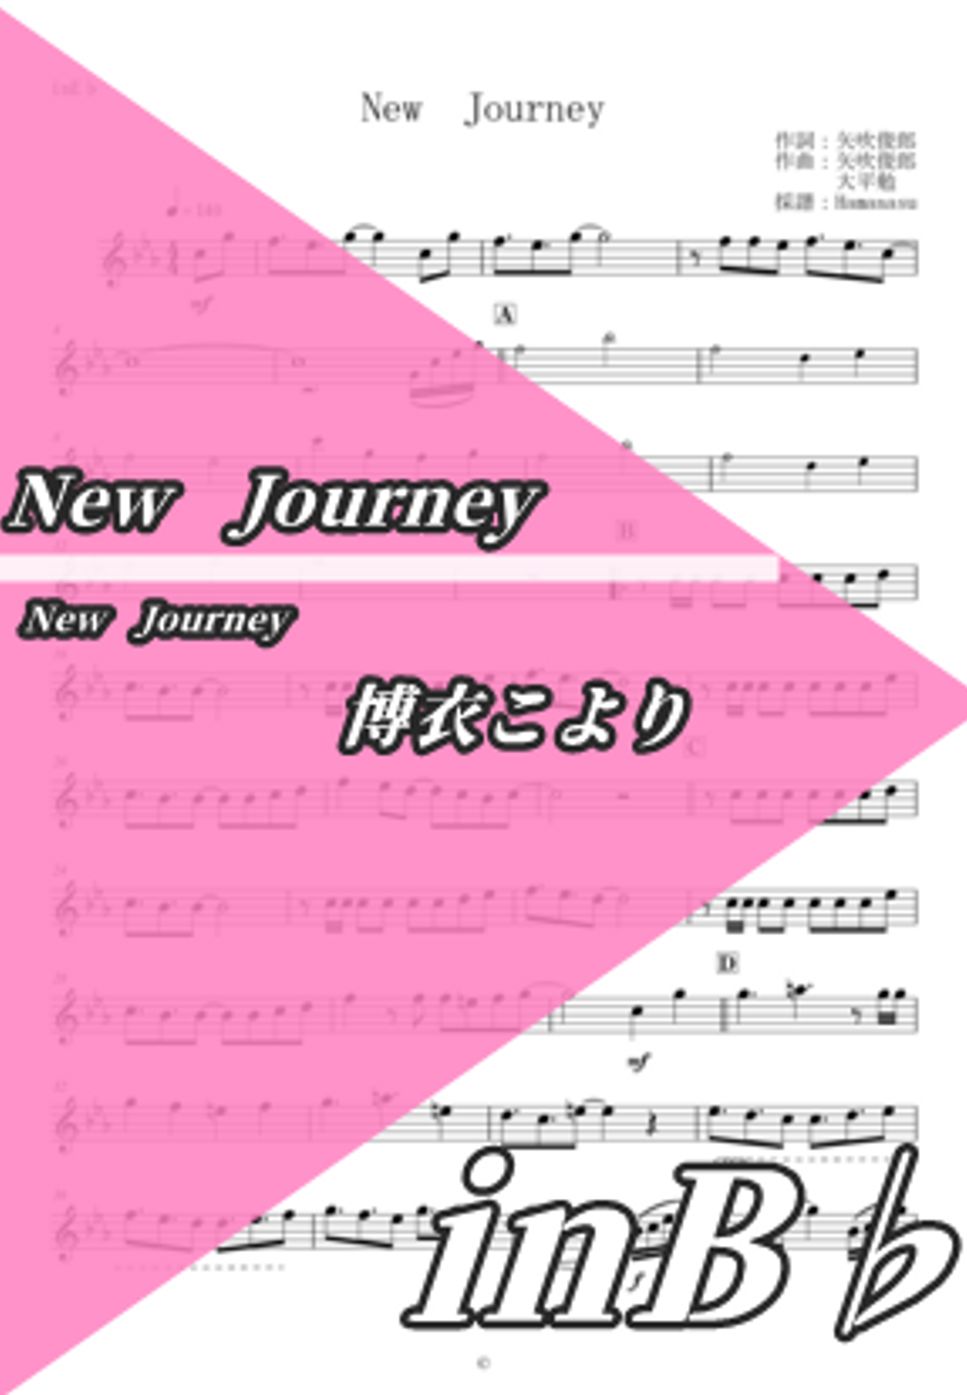 博衣こより - New　Journey (inB♭) by はまなす